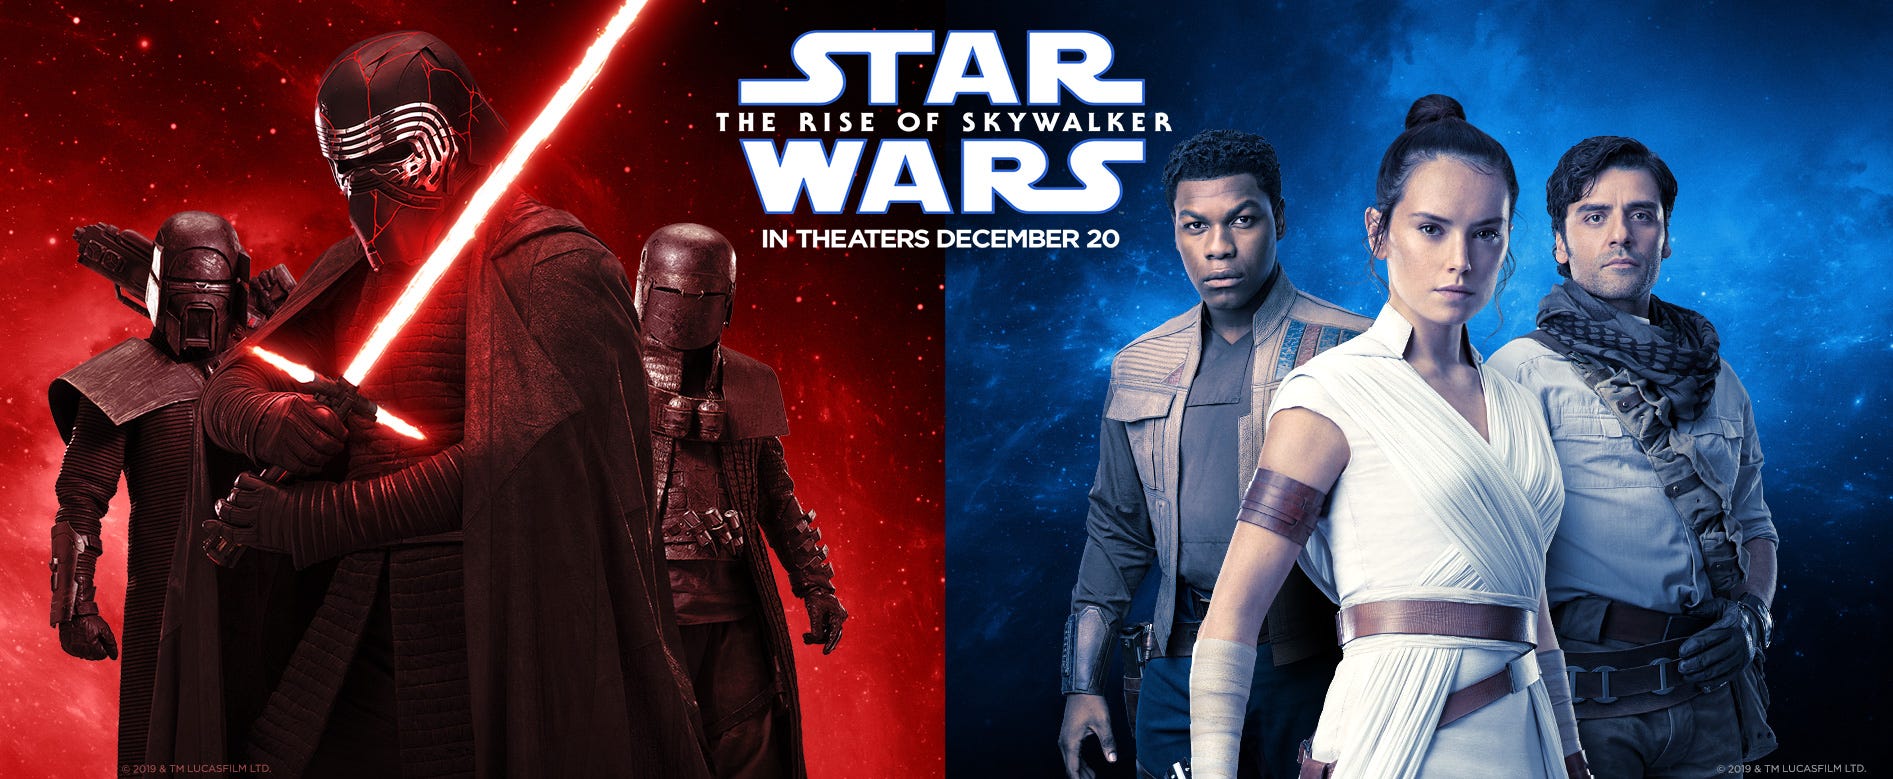 Star Wars Teljes - Star Wars - Skywalker kora Teljes Film Magyarul 2020 - YouTube : Battle star wars előzetes meg lehet nézni az interneten battle star wars teljes streaming.